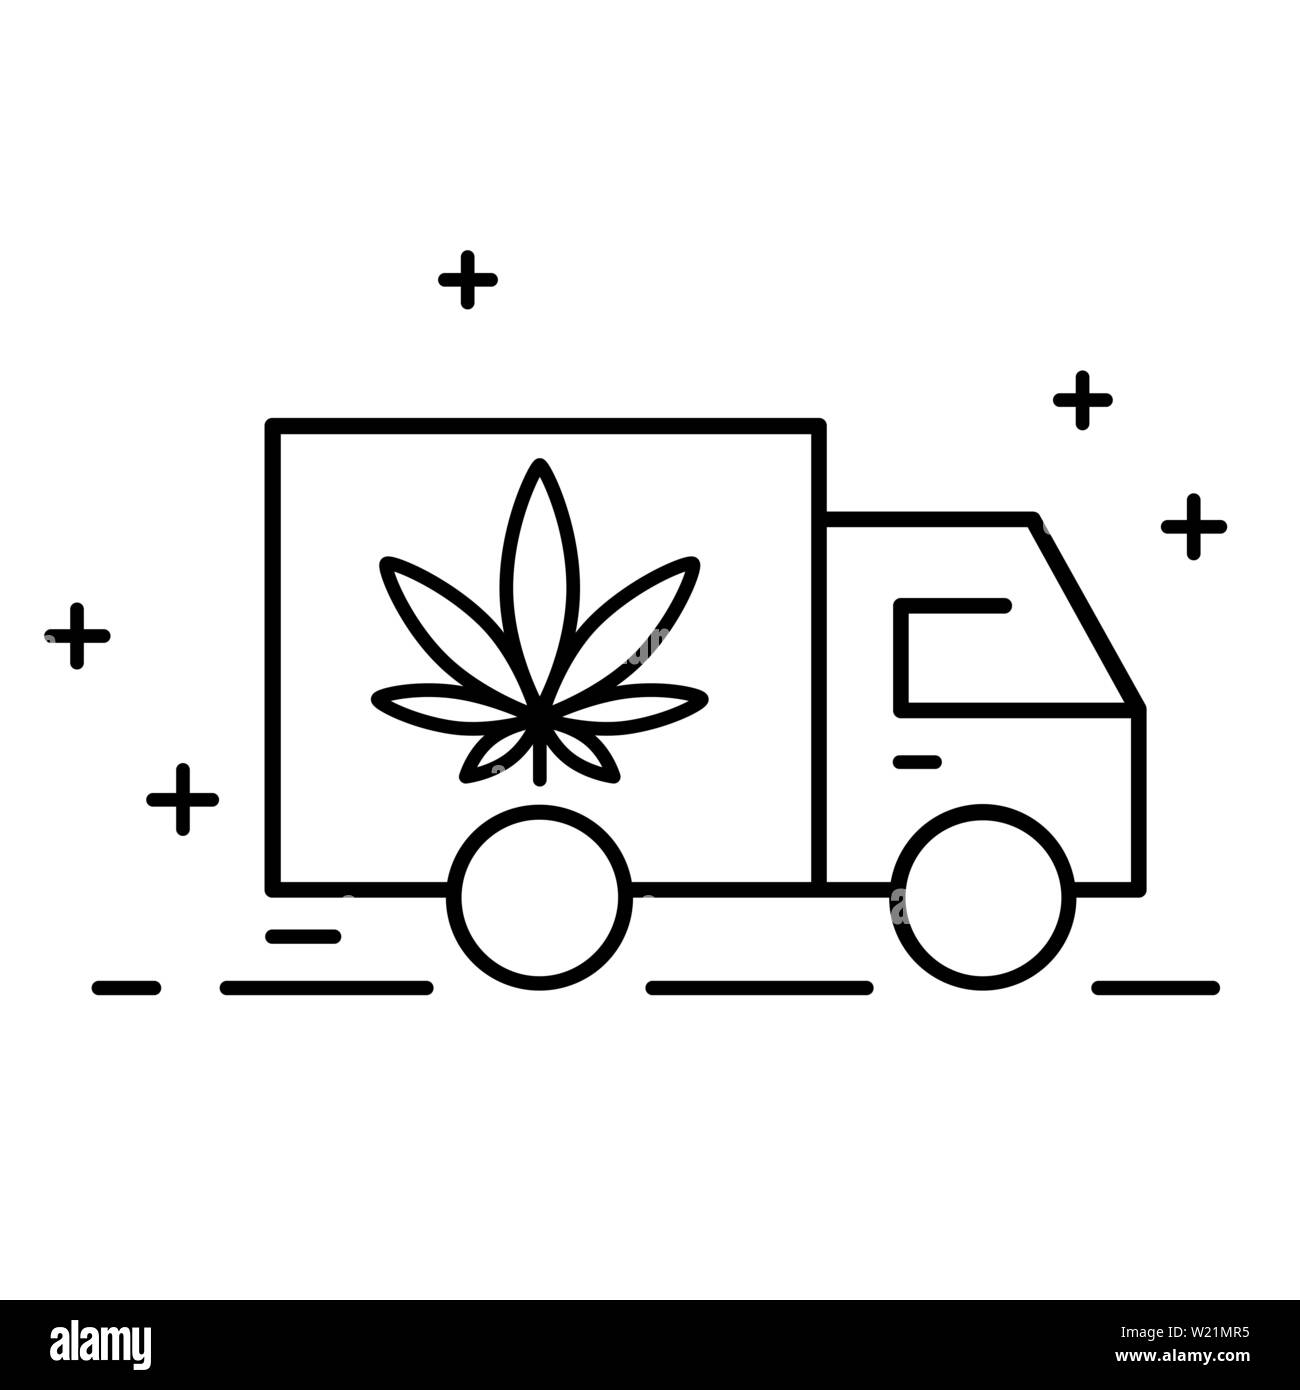 La consegna di cannabis. Illustrazione di una consegna icona del carrello con una foglia di marijuana. Consumo di droga, uso di marijuana. La legalizzazione della marijuana. Vect isolato Illustrazione Vettoriale